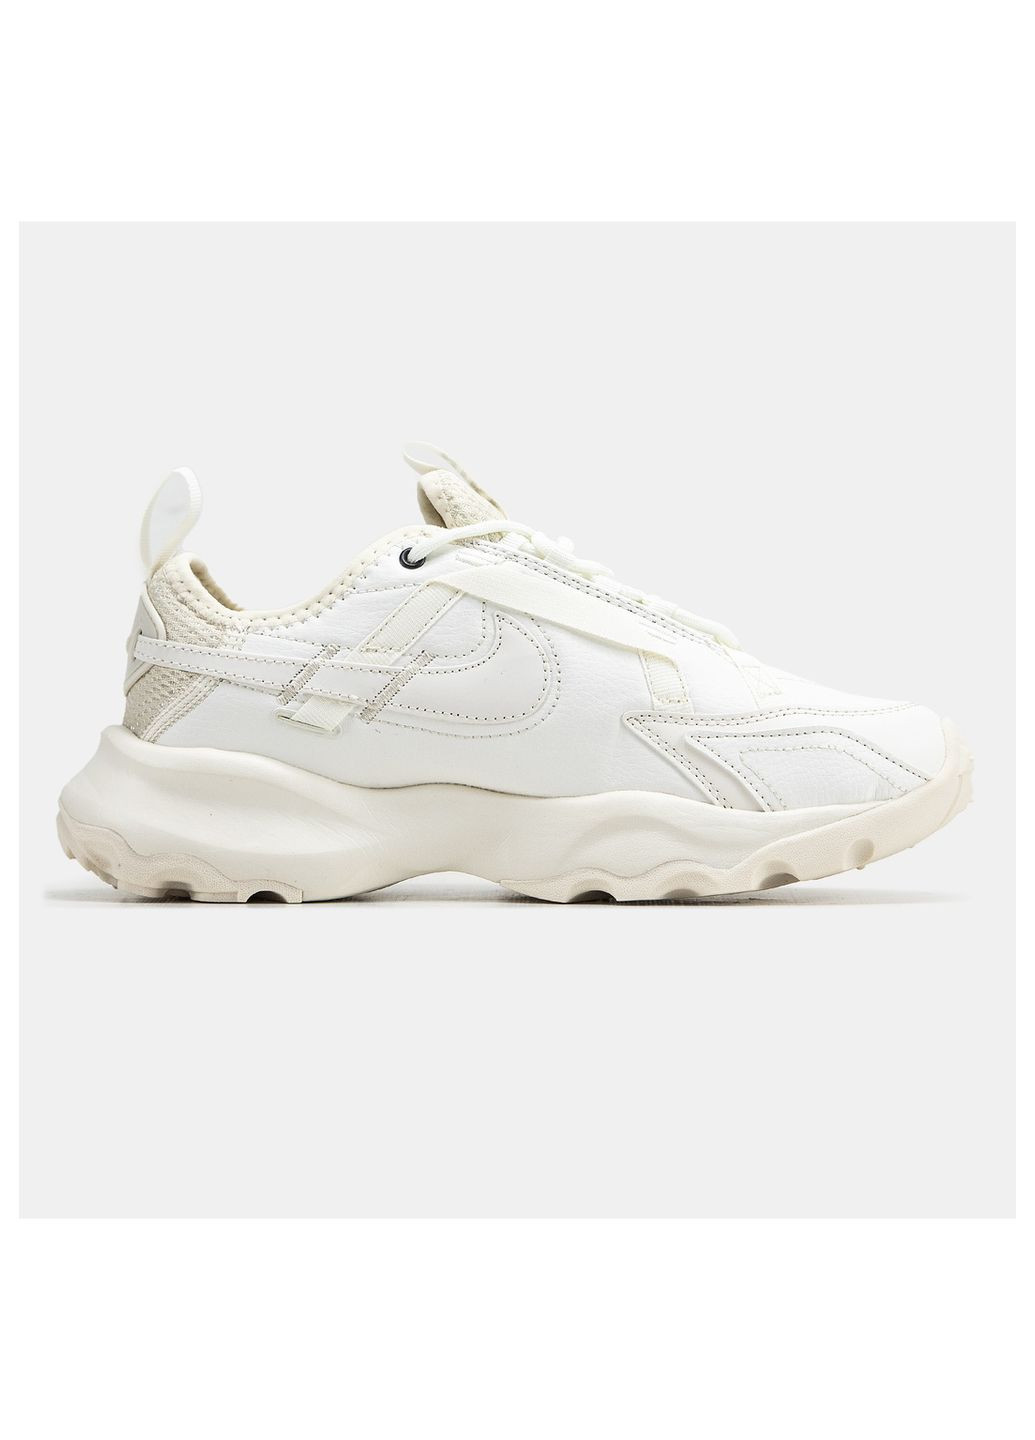 Белые кроссовки унисекс Nike ТС 7900